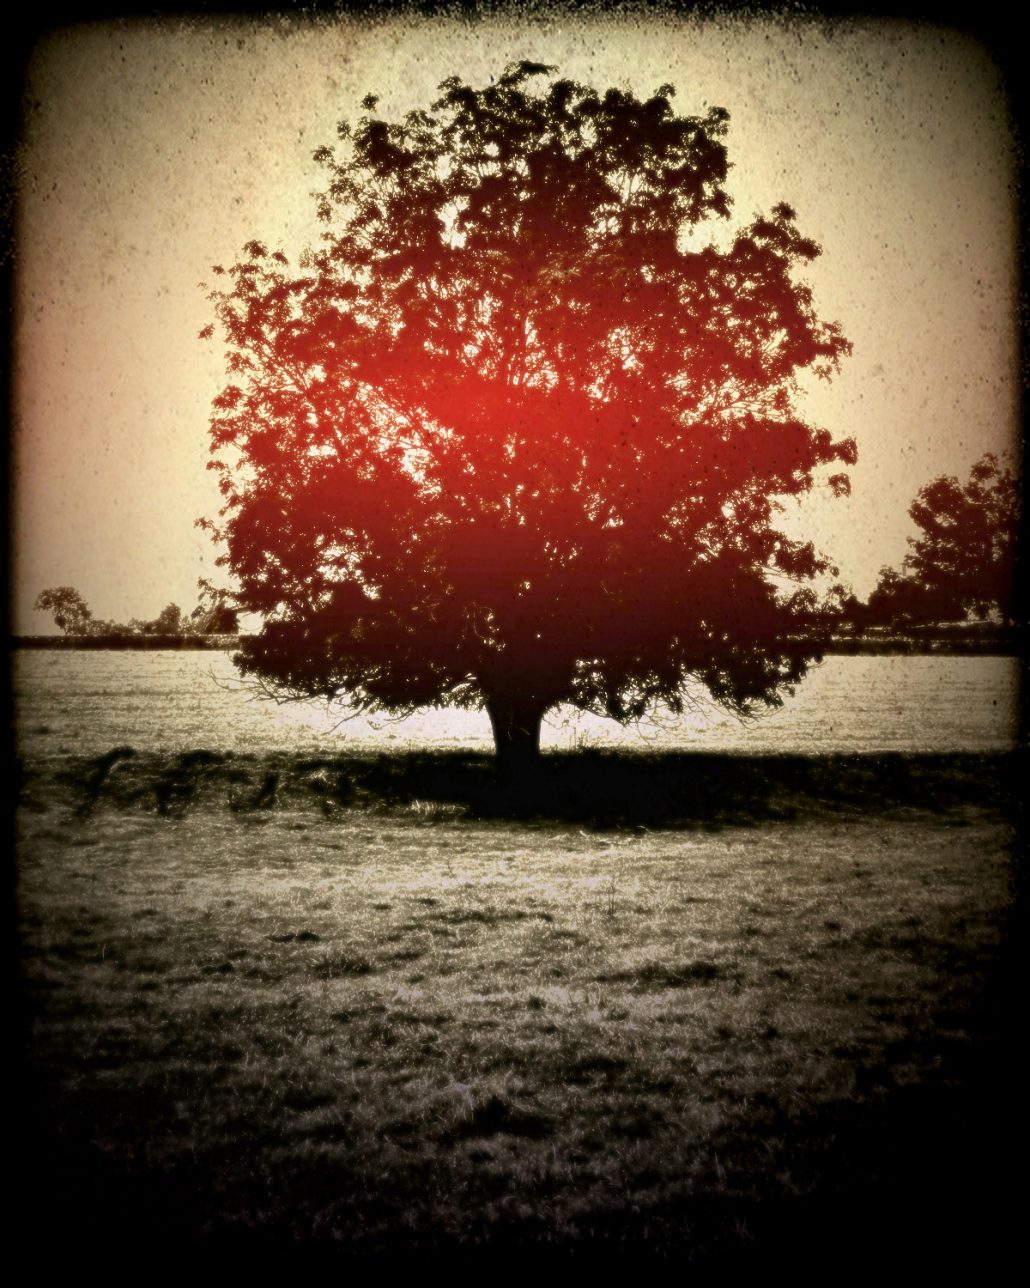 L’arbre rouge